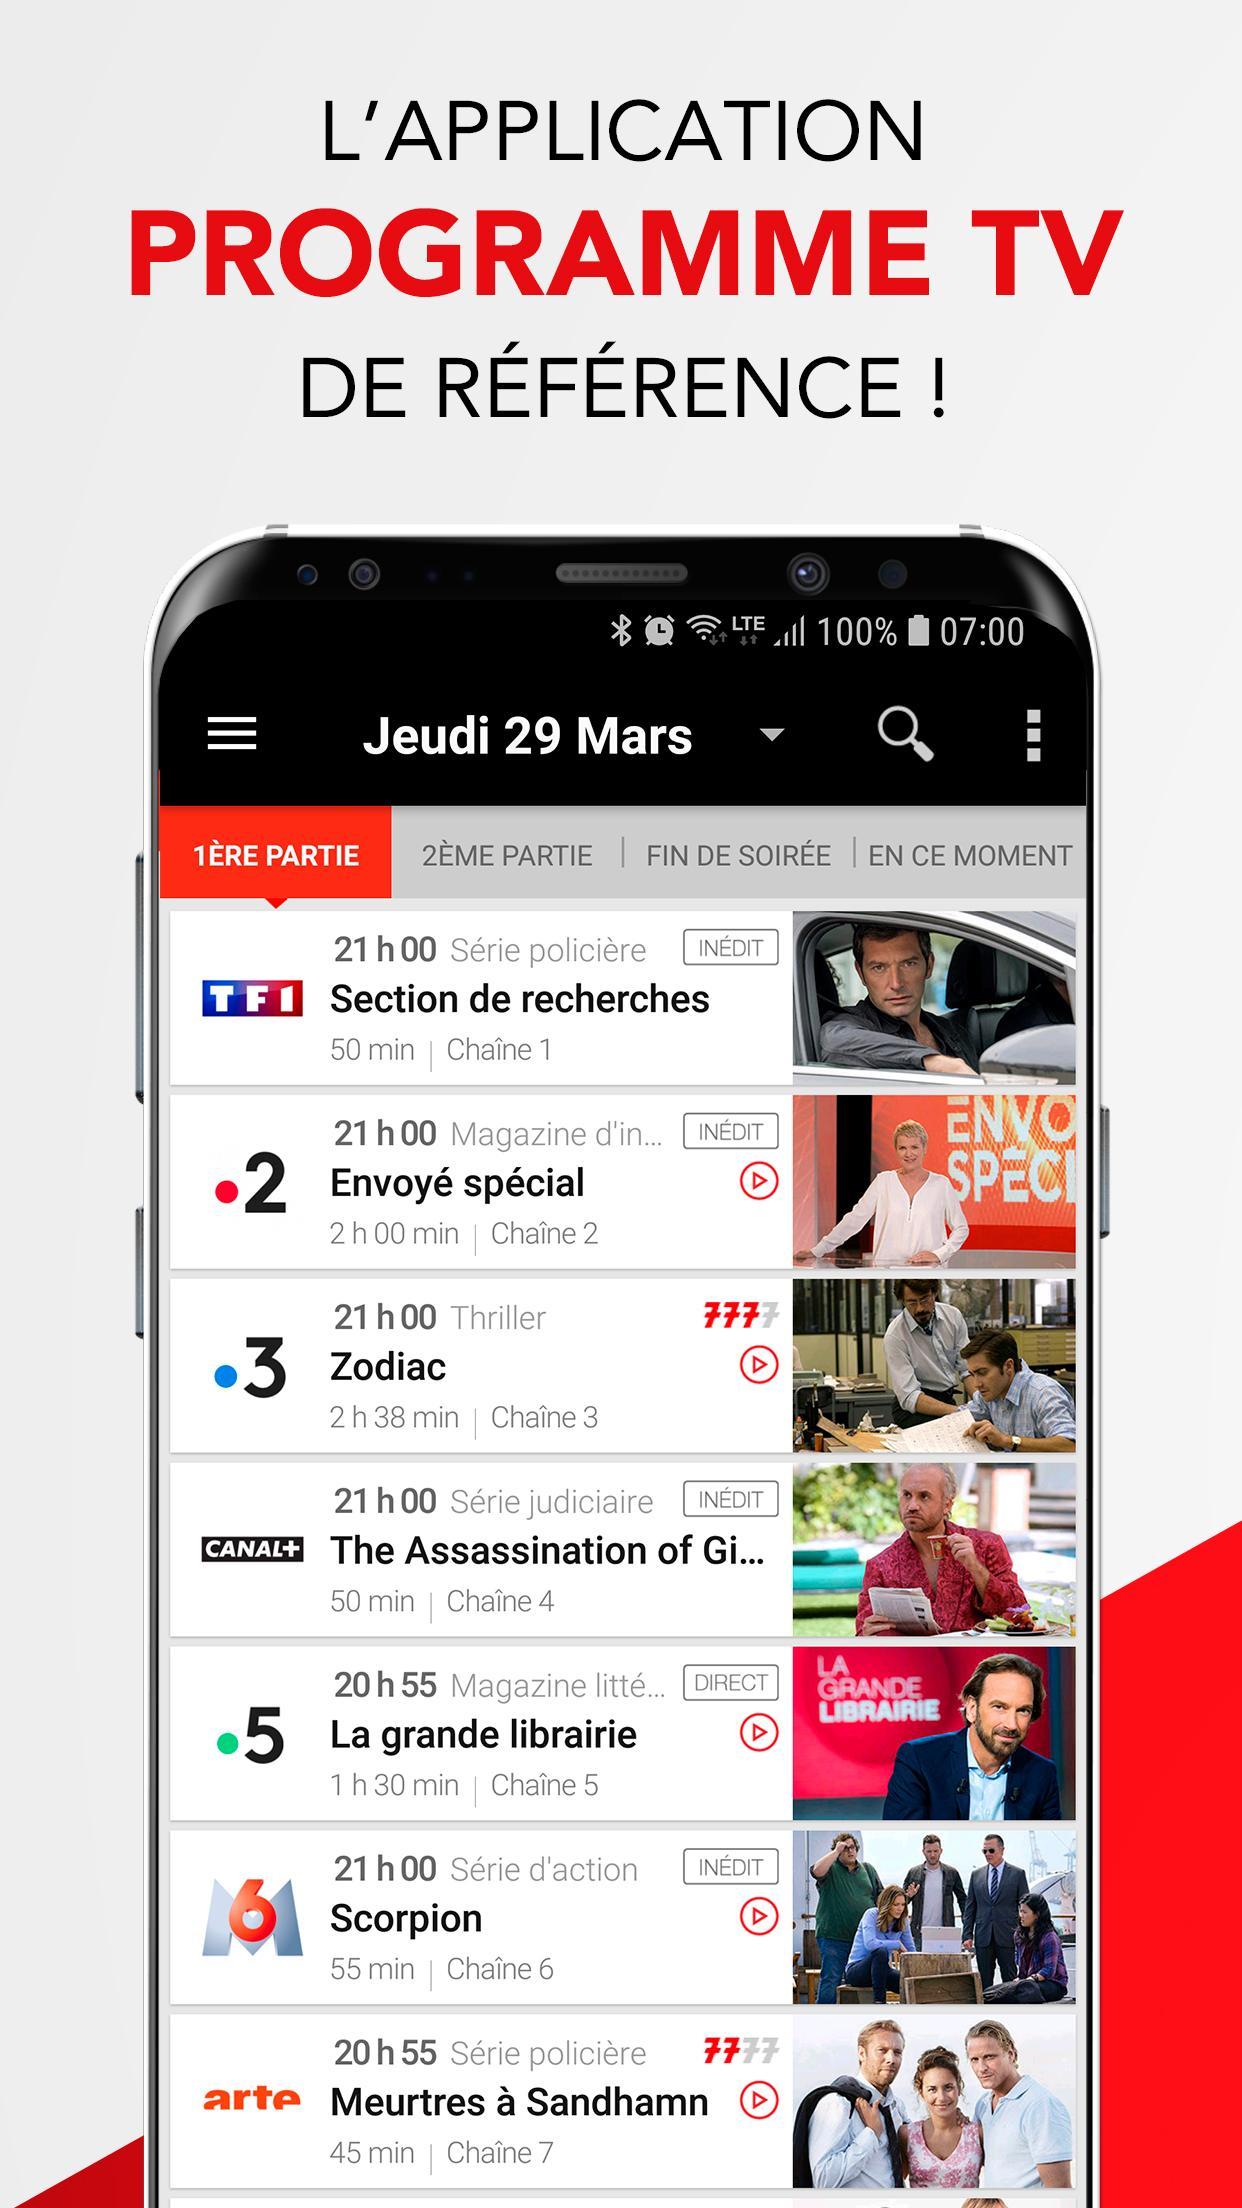 Programme TV Télé 7 Jours for Android - APK Download